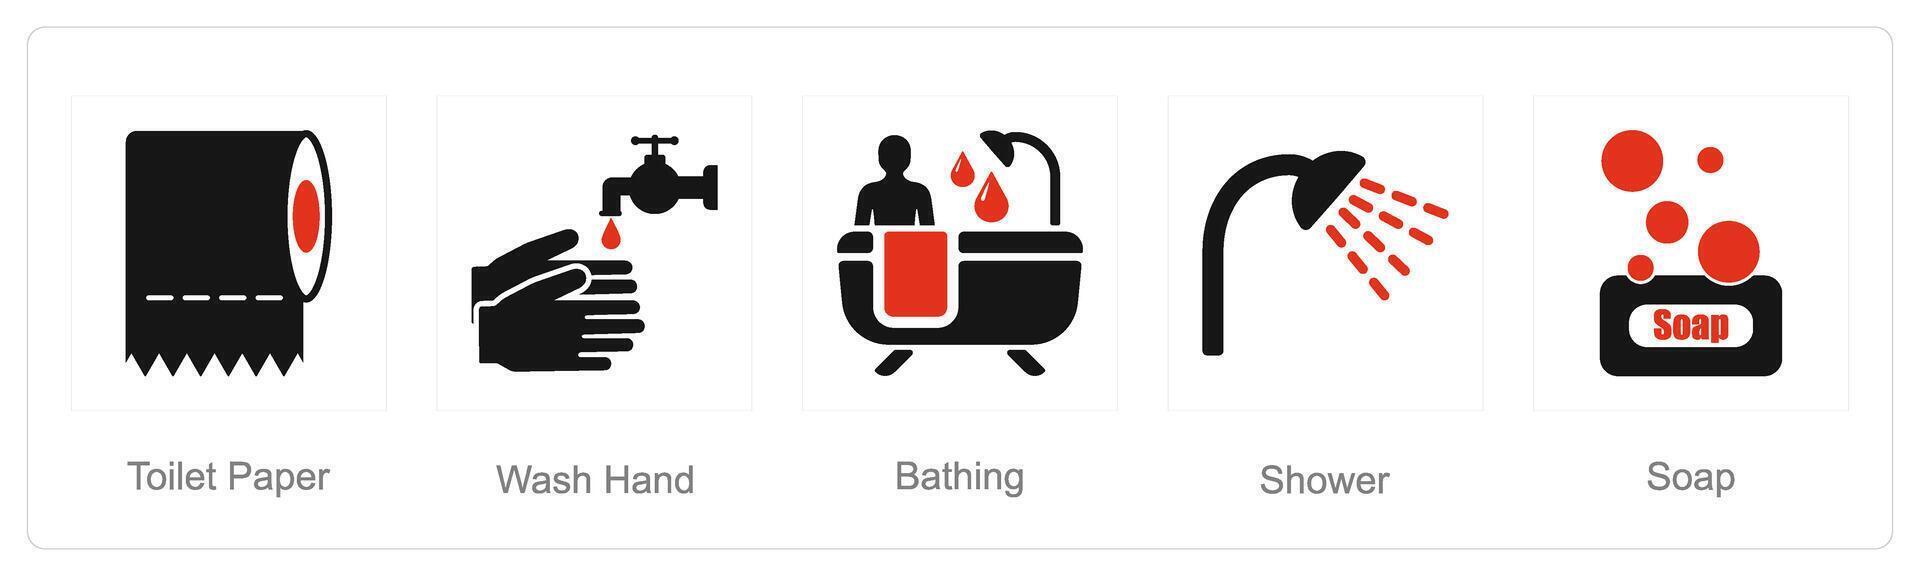 uma conjunto do 5 higiene ícones Como banheiro papel, lavar mão, tomando banho vetor